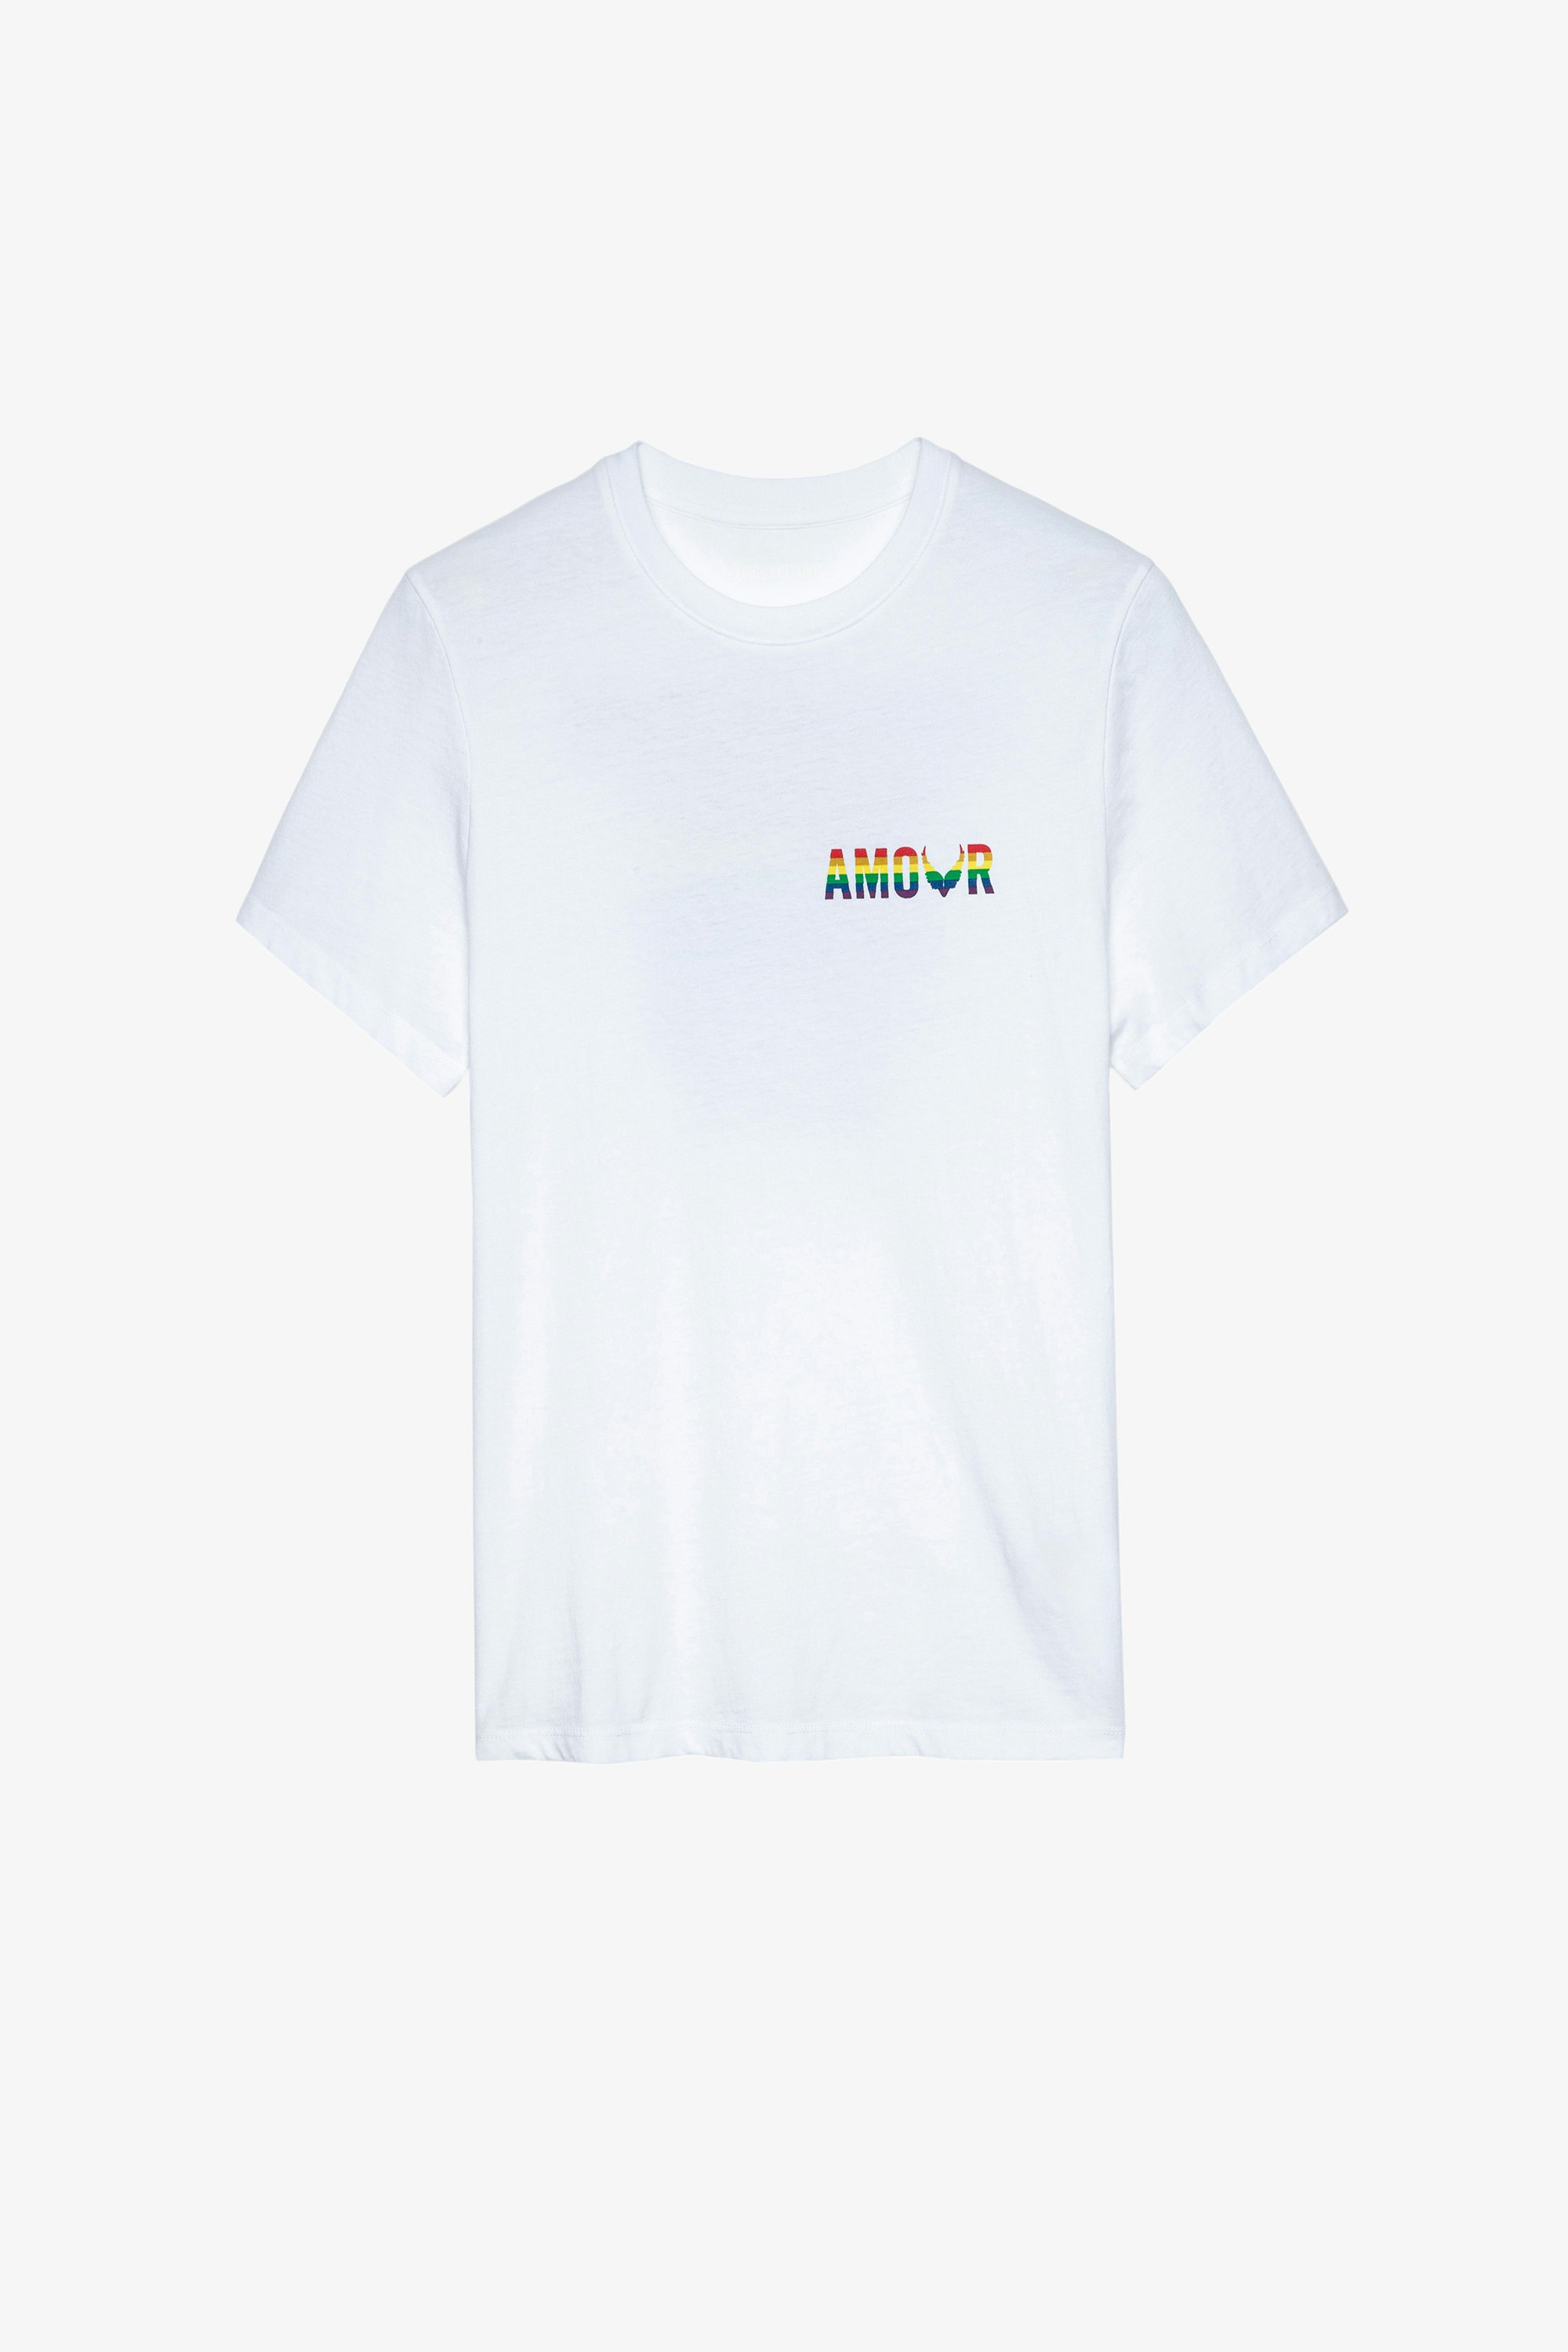 T-Shirt Tommy Amour Wings T-shirt en coton blanc imprimé Amour multicolore Femme